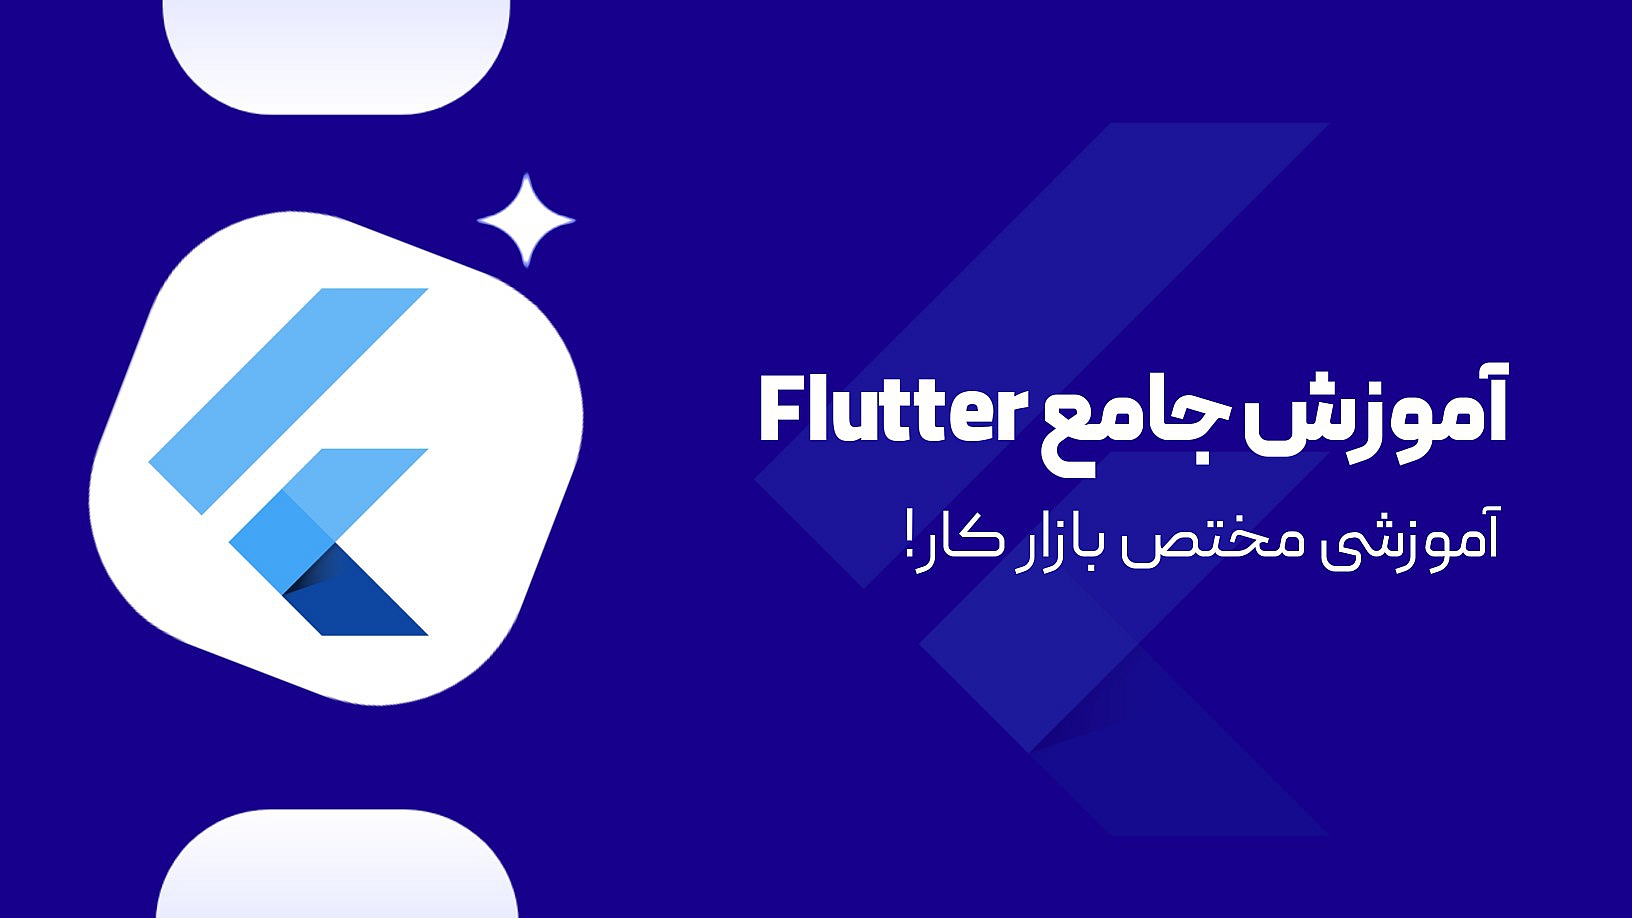 آموزش جامع فلاتر ( Flutter ) + پروژه